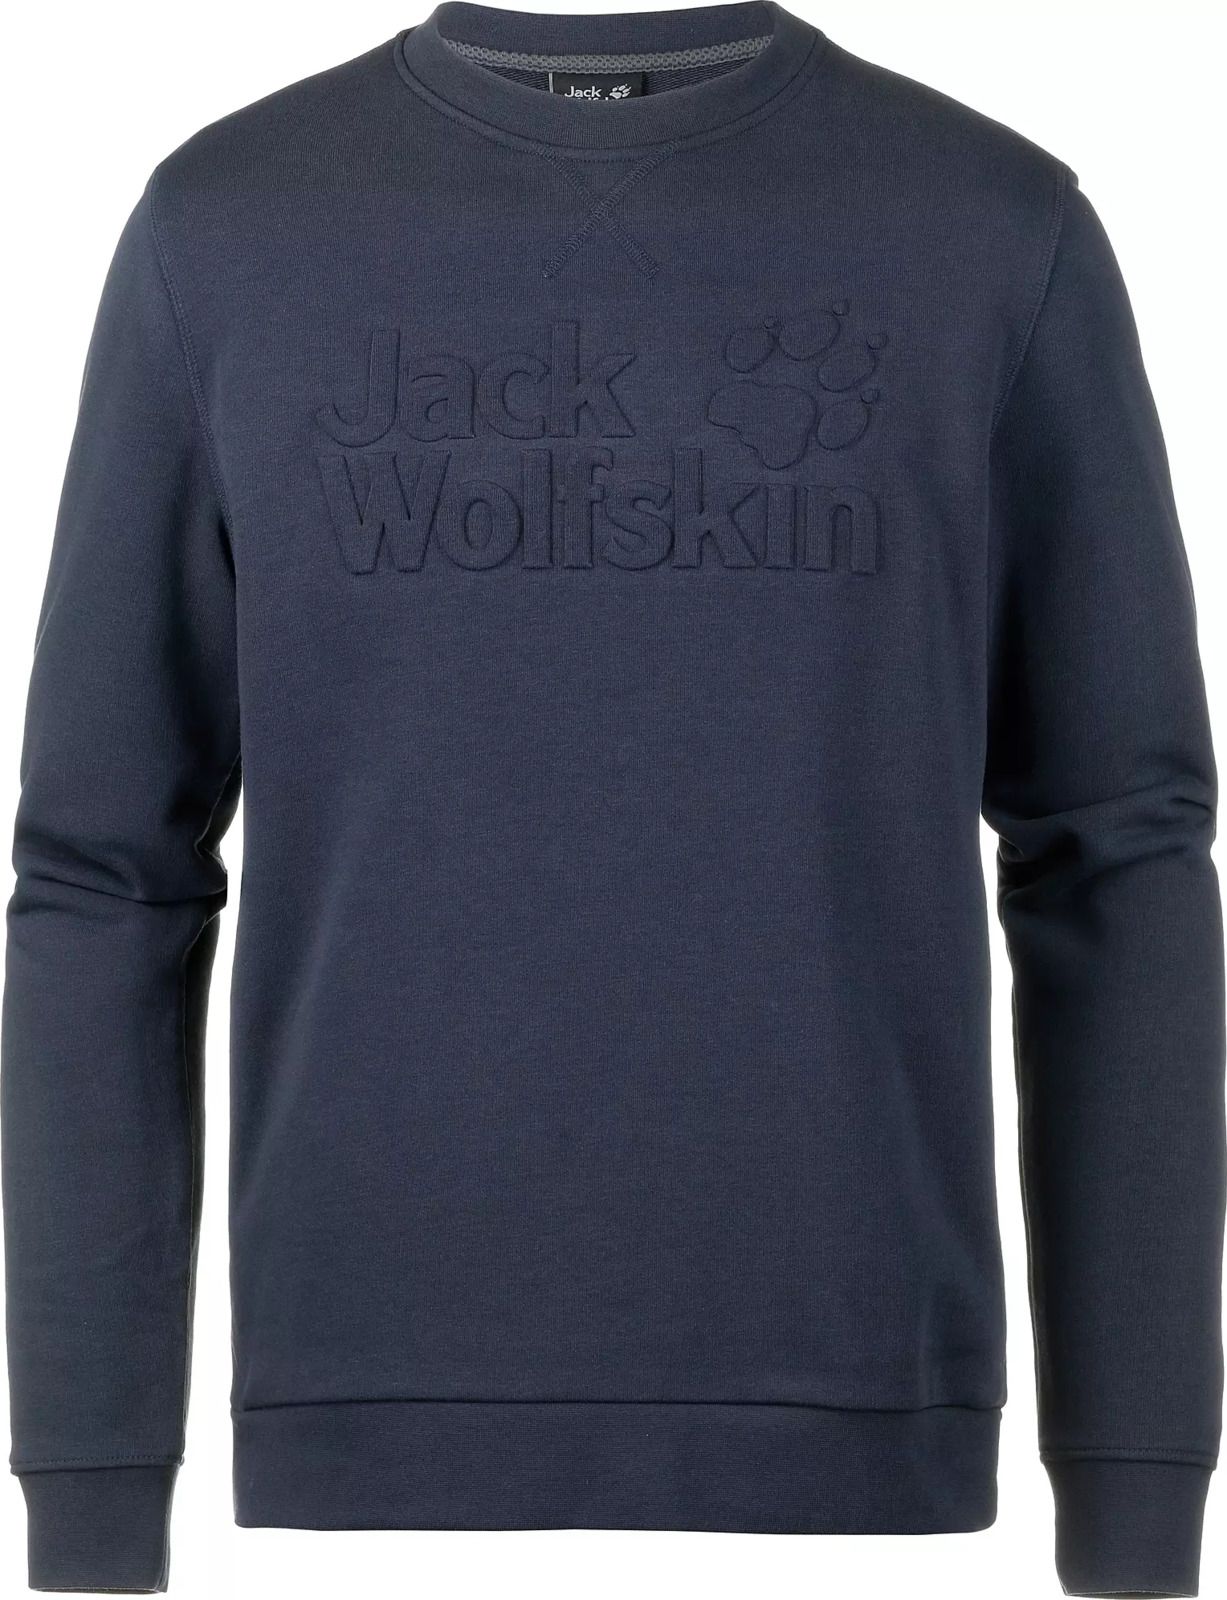   Jack Wolfskin Logo Sweatshirt M, : -. 5018891-1010.  XL (52)